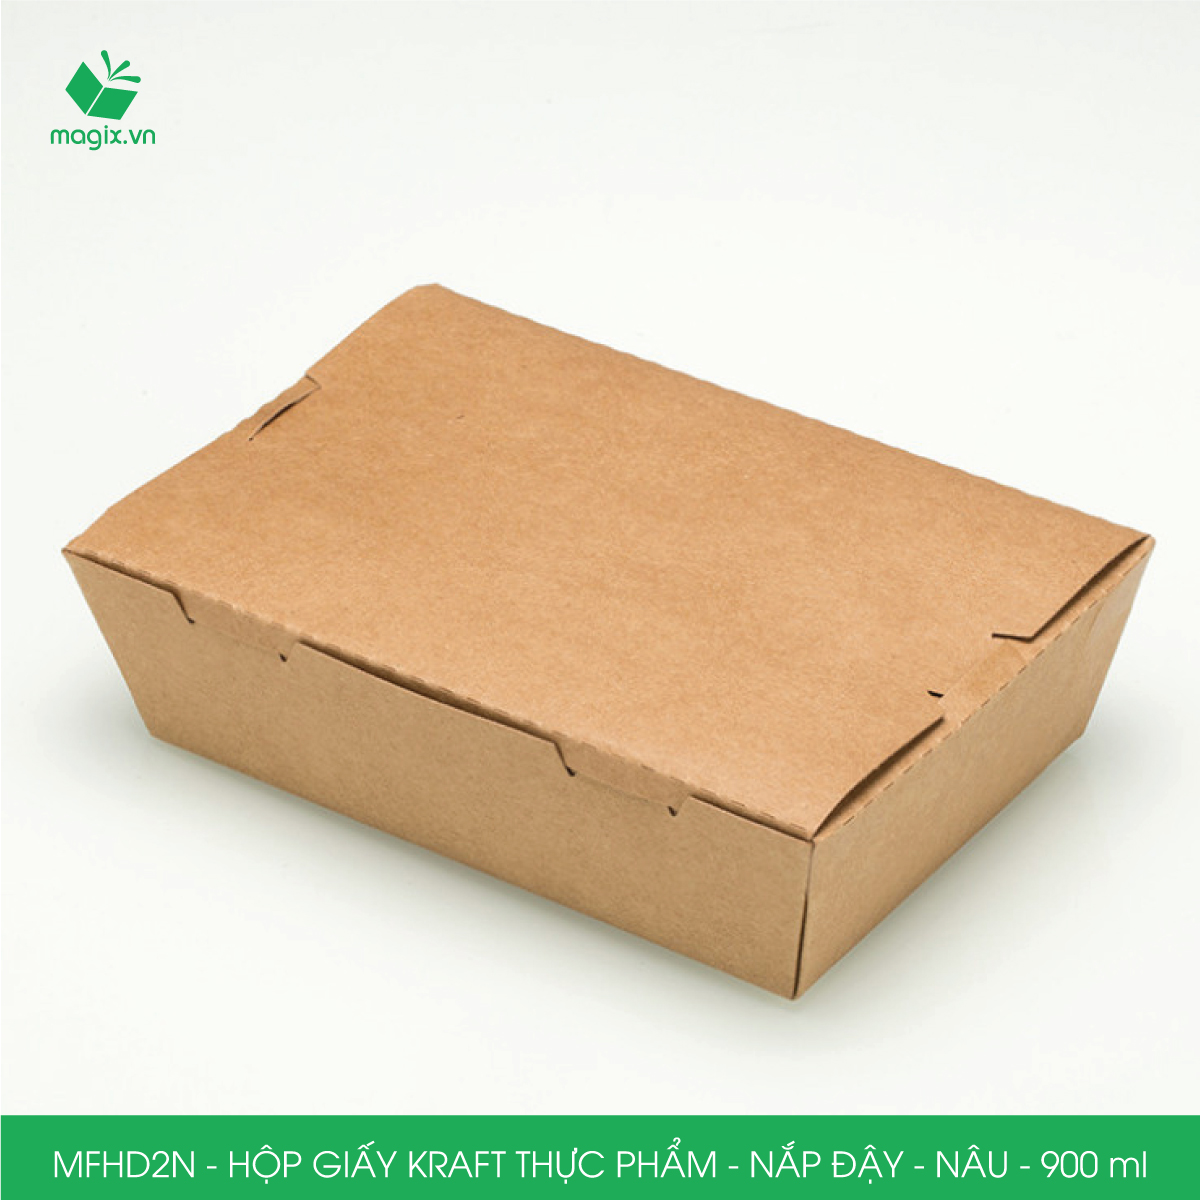 MFHD2N - Combo 50 hộp giấy kraft thực phẩm 900ml, hộp đựng thức ăn nắp đậy màu nâu, hộp gói đồ ăn mang đi